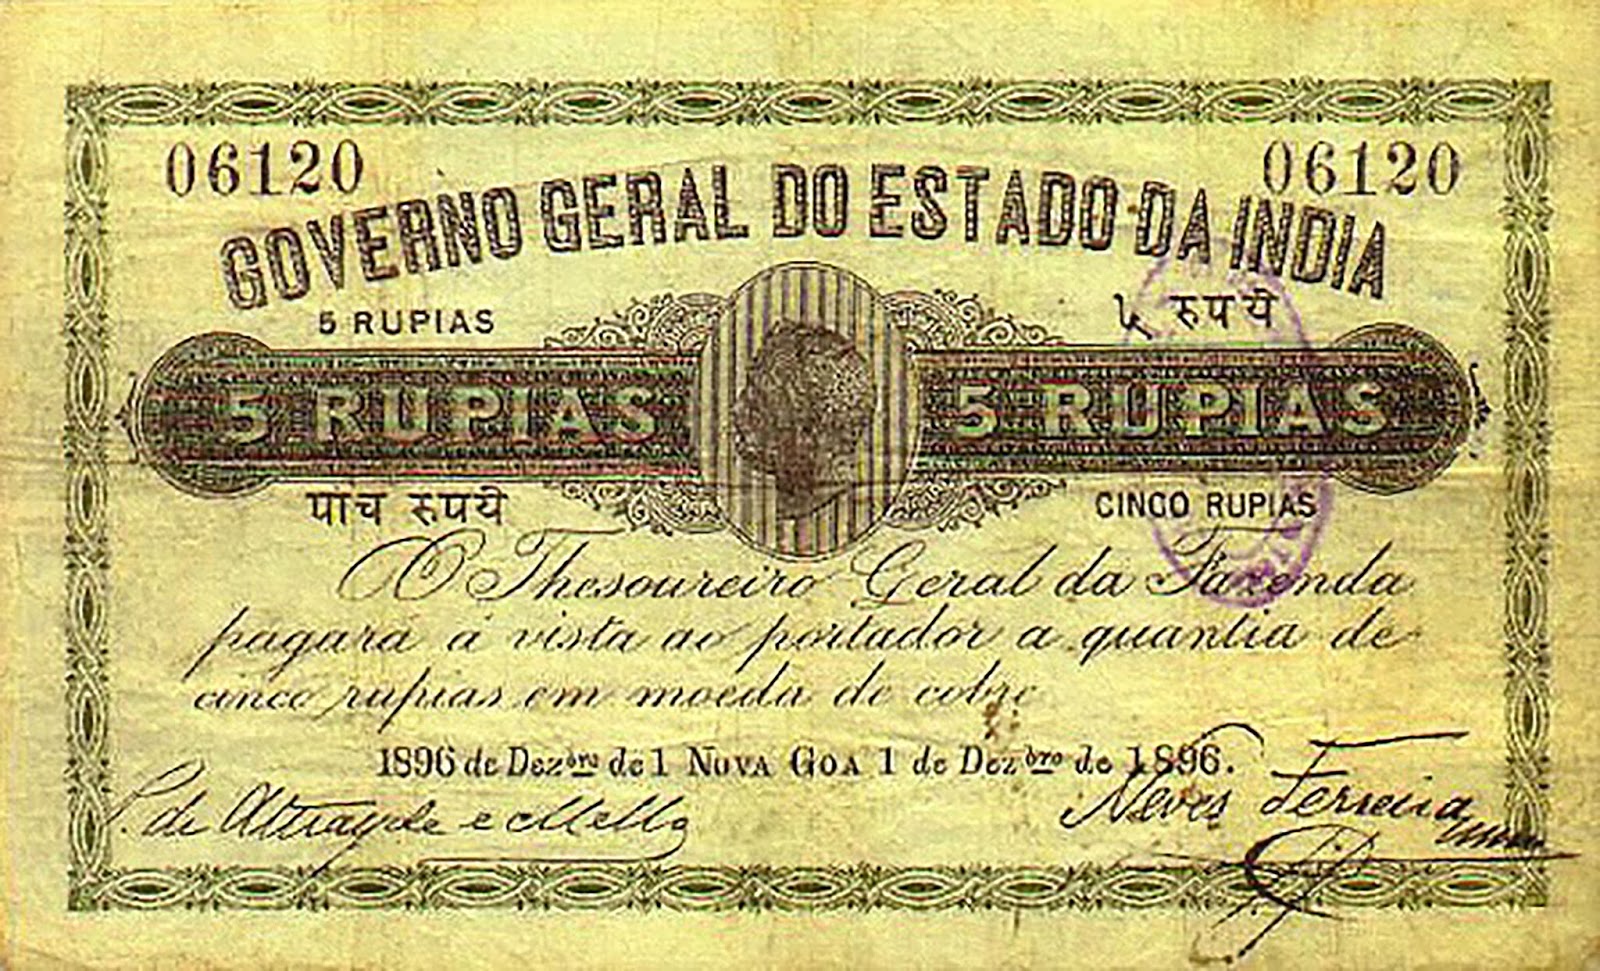 Название бала 29 декабря 1896. Банкноты Германии 1896. Банкноты португальская Индия. Деньги дикого Запада 1896 года. Rupias.